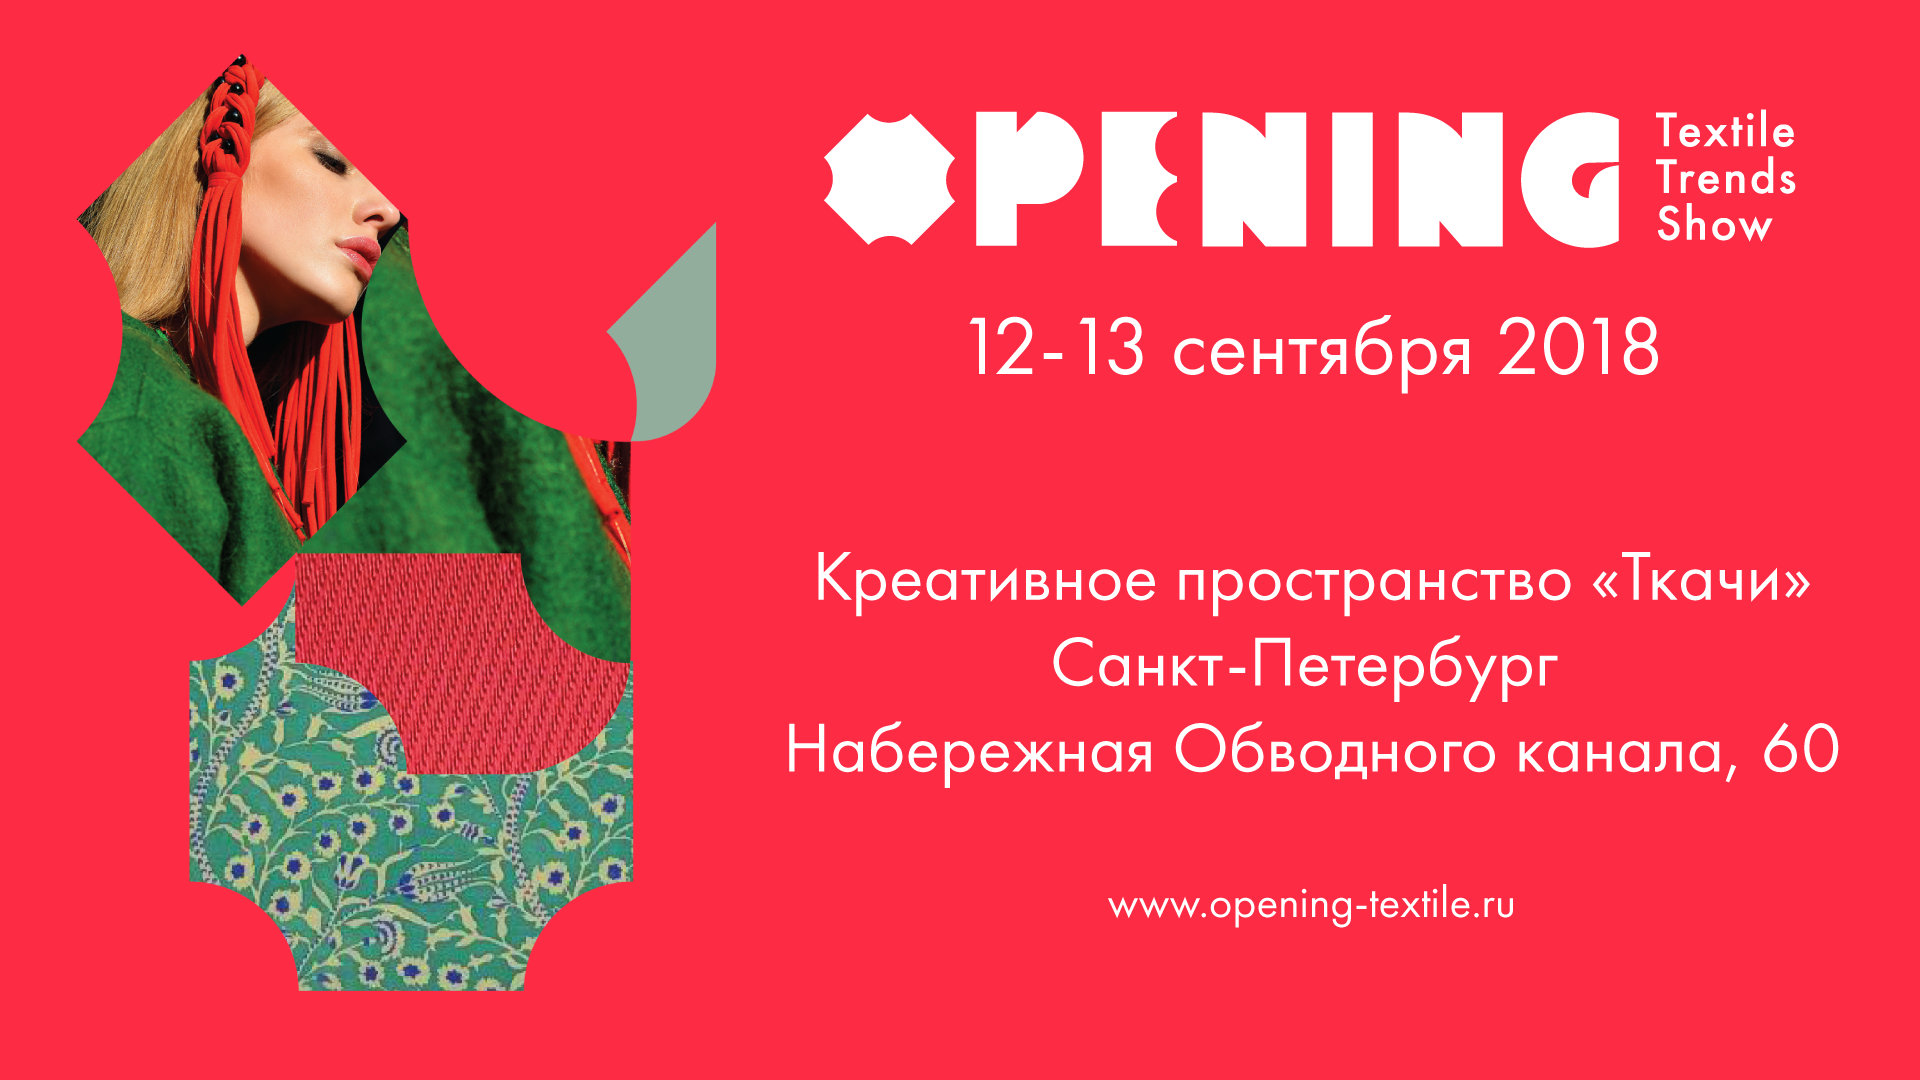 12—13 сентября 2018 в Санкт-Петербурге пройдет фестиваль OPENING Textile Trends Show — новый культурный проект на рынке fashion мероприятий